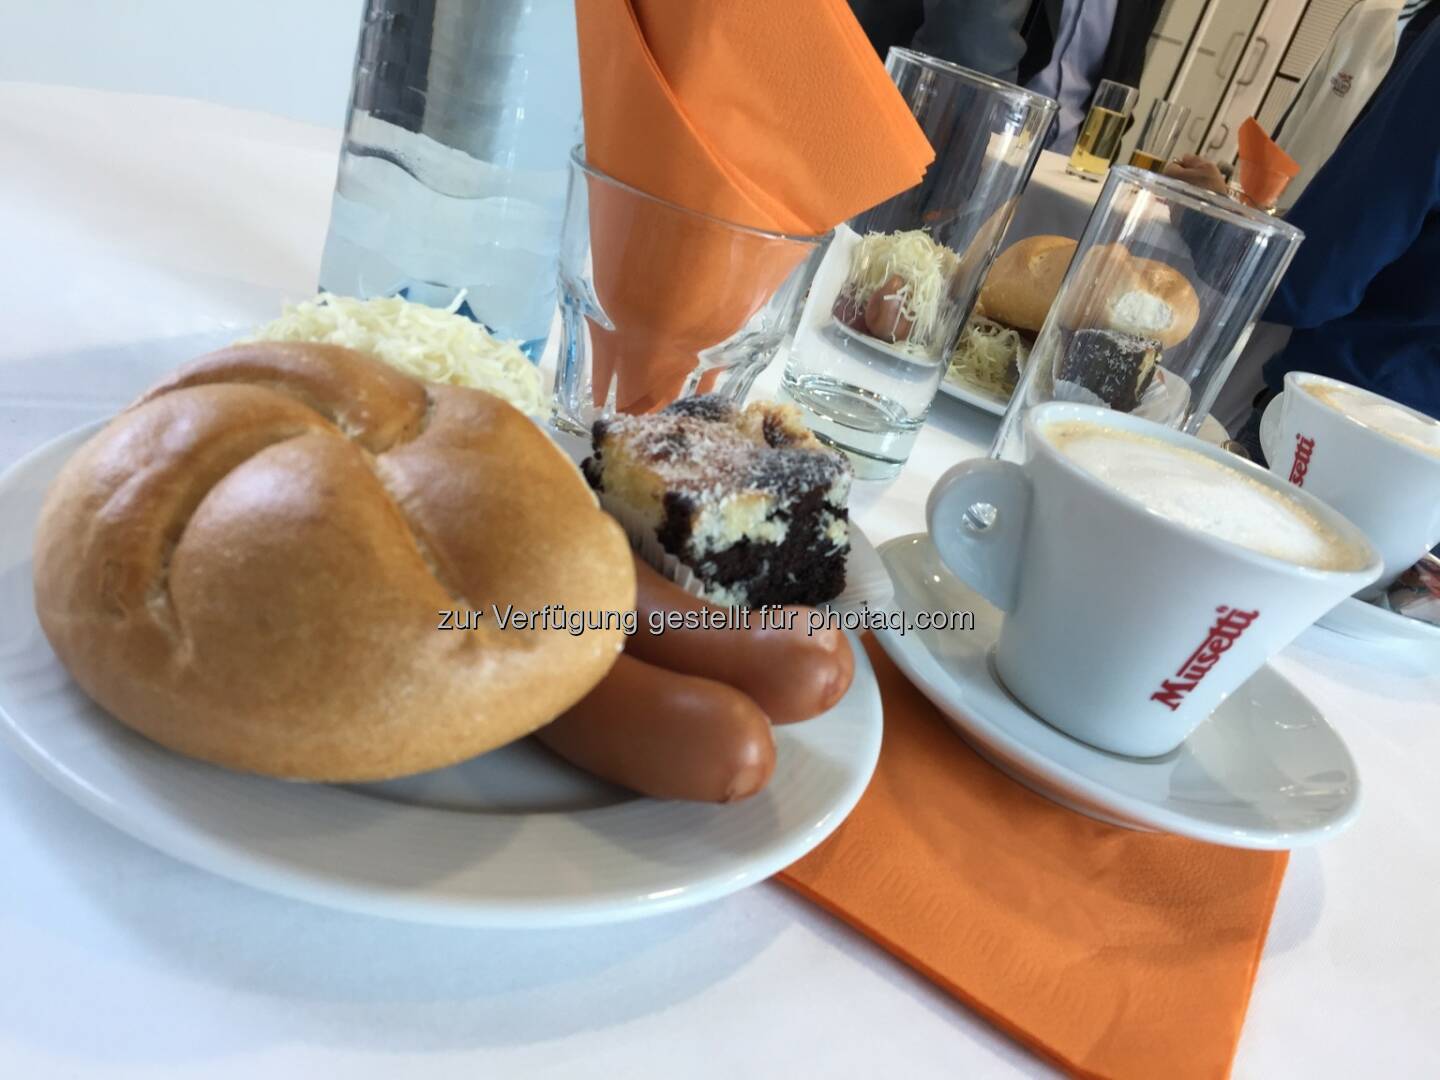 Frankfurter mit Semmel und Nachspeise, Kaffee von Schärf, Semperit-HV 2018